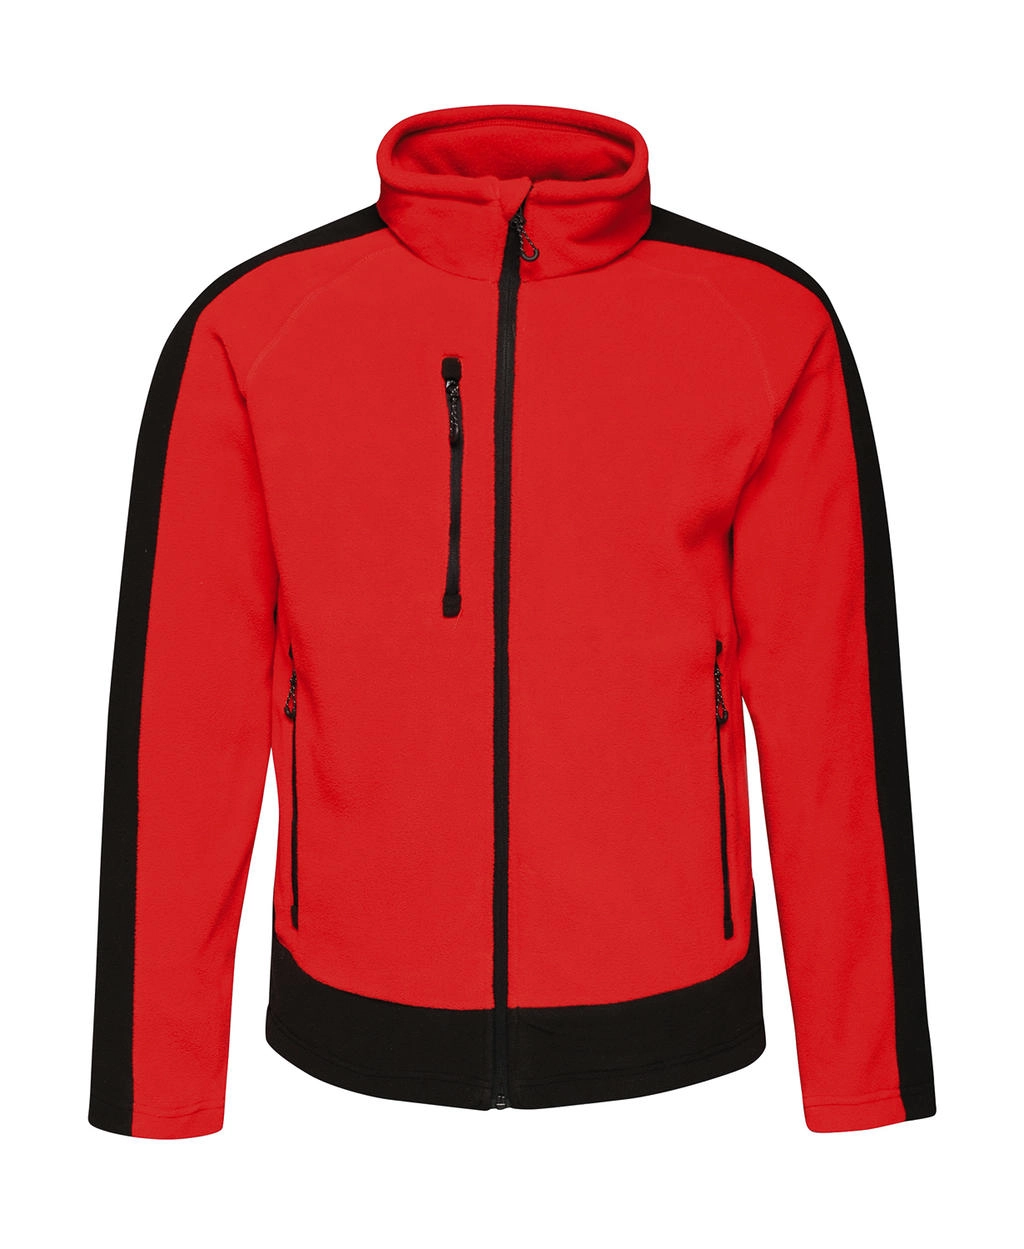 Contrast 300G Fleece zum Besticken und Bedrucken in der Farbe Classic Red/Black mit Ihren Logo, Schriftzug oder Motiv.